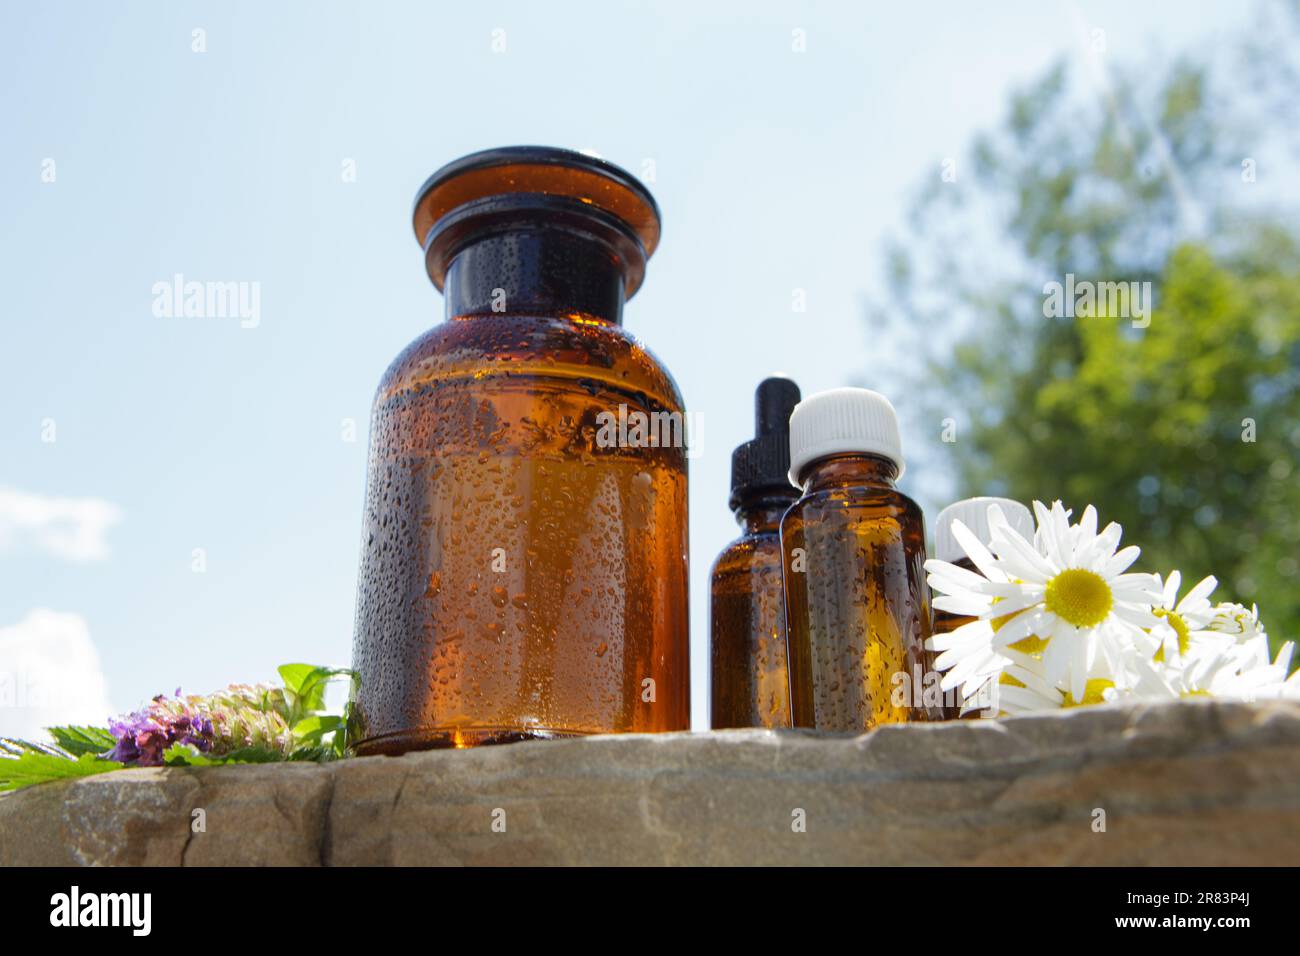 Natürliche Kräuter, Zusammensetzung von medizinischen Flaschen und frische Kräuter. Alternative Behandlung. Stockfoto